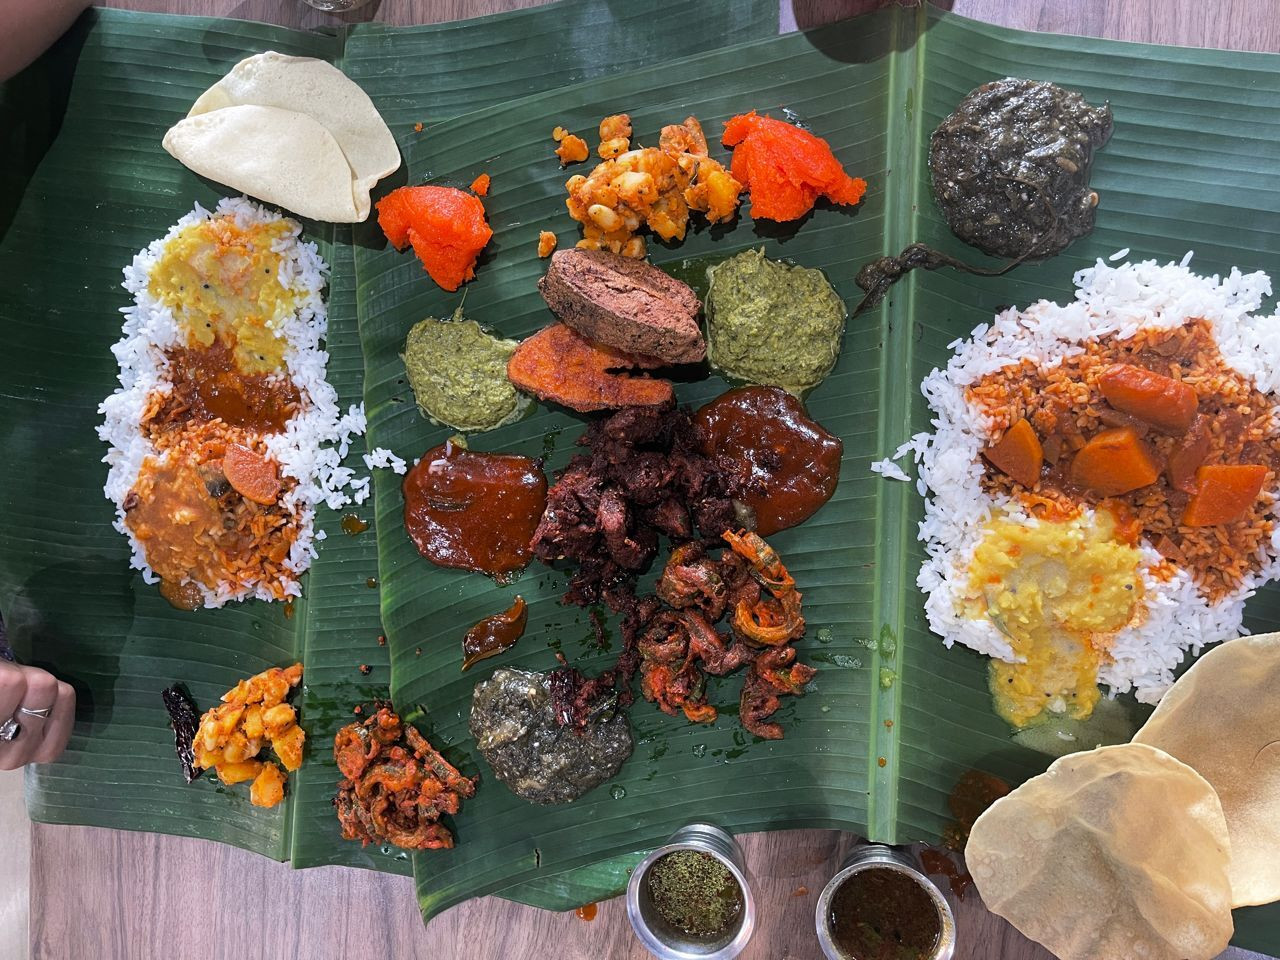 Bindhu serves a 10 dish thali set at a reasonable price. – Pic by Kalash Kumar